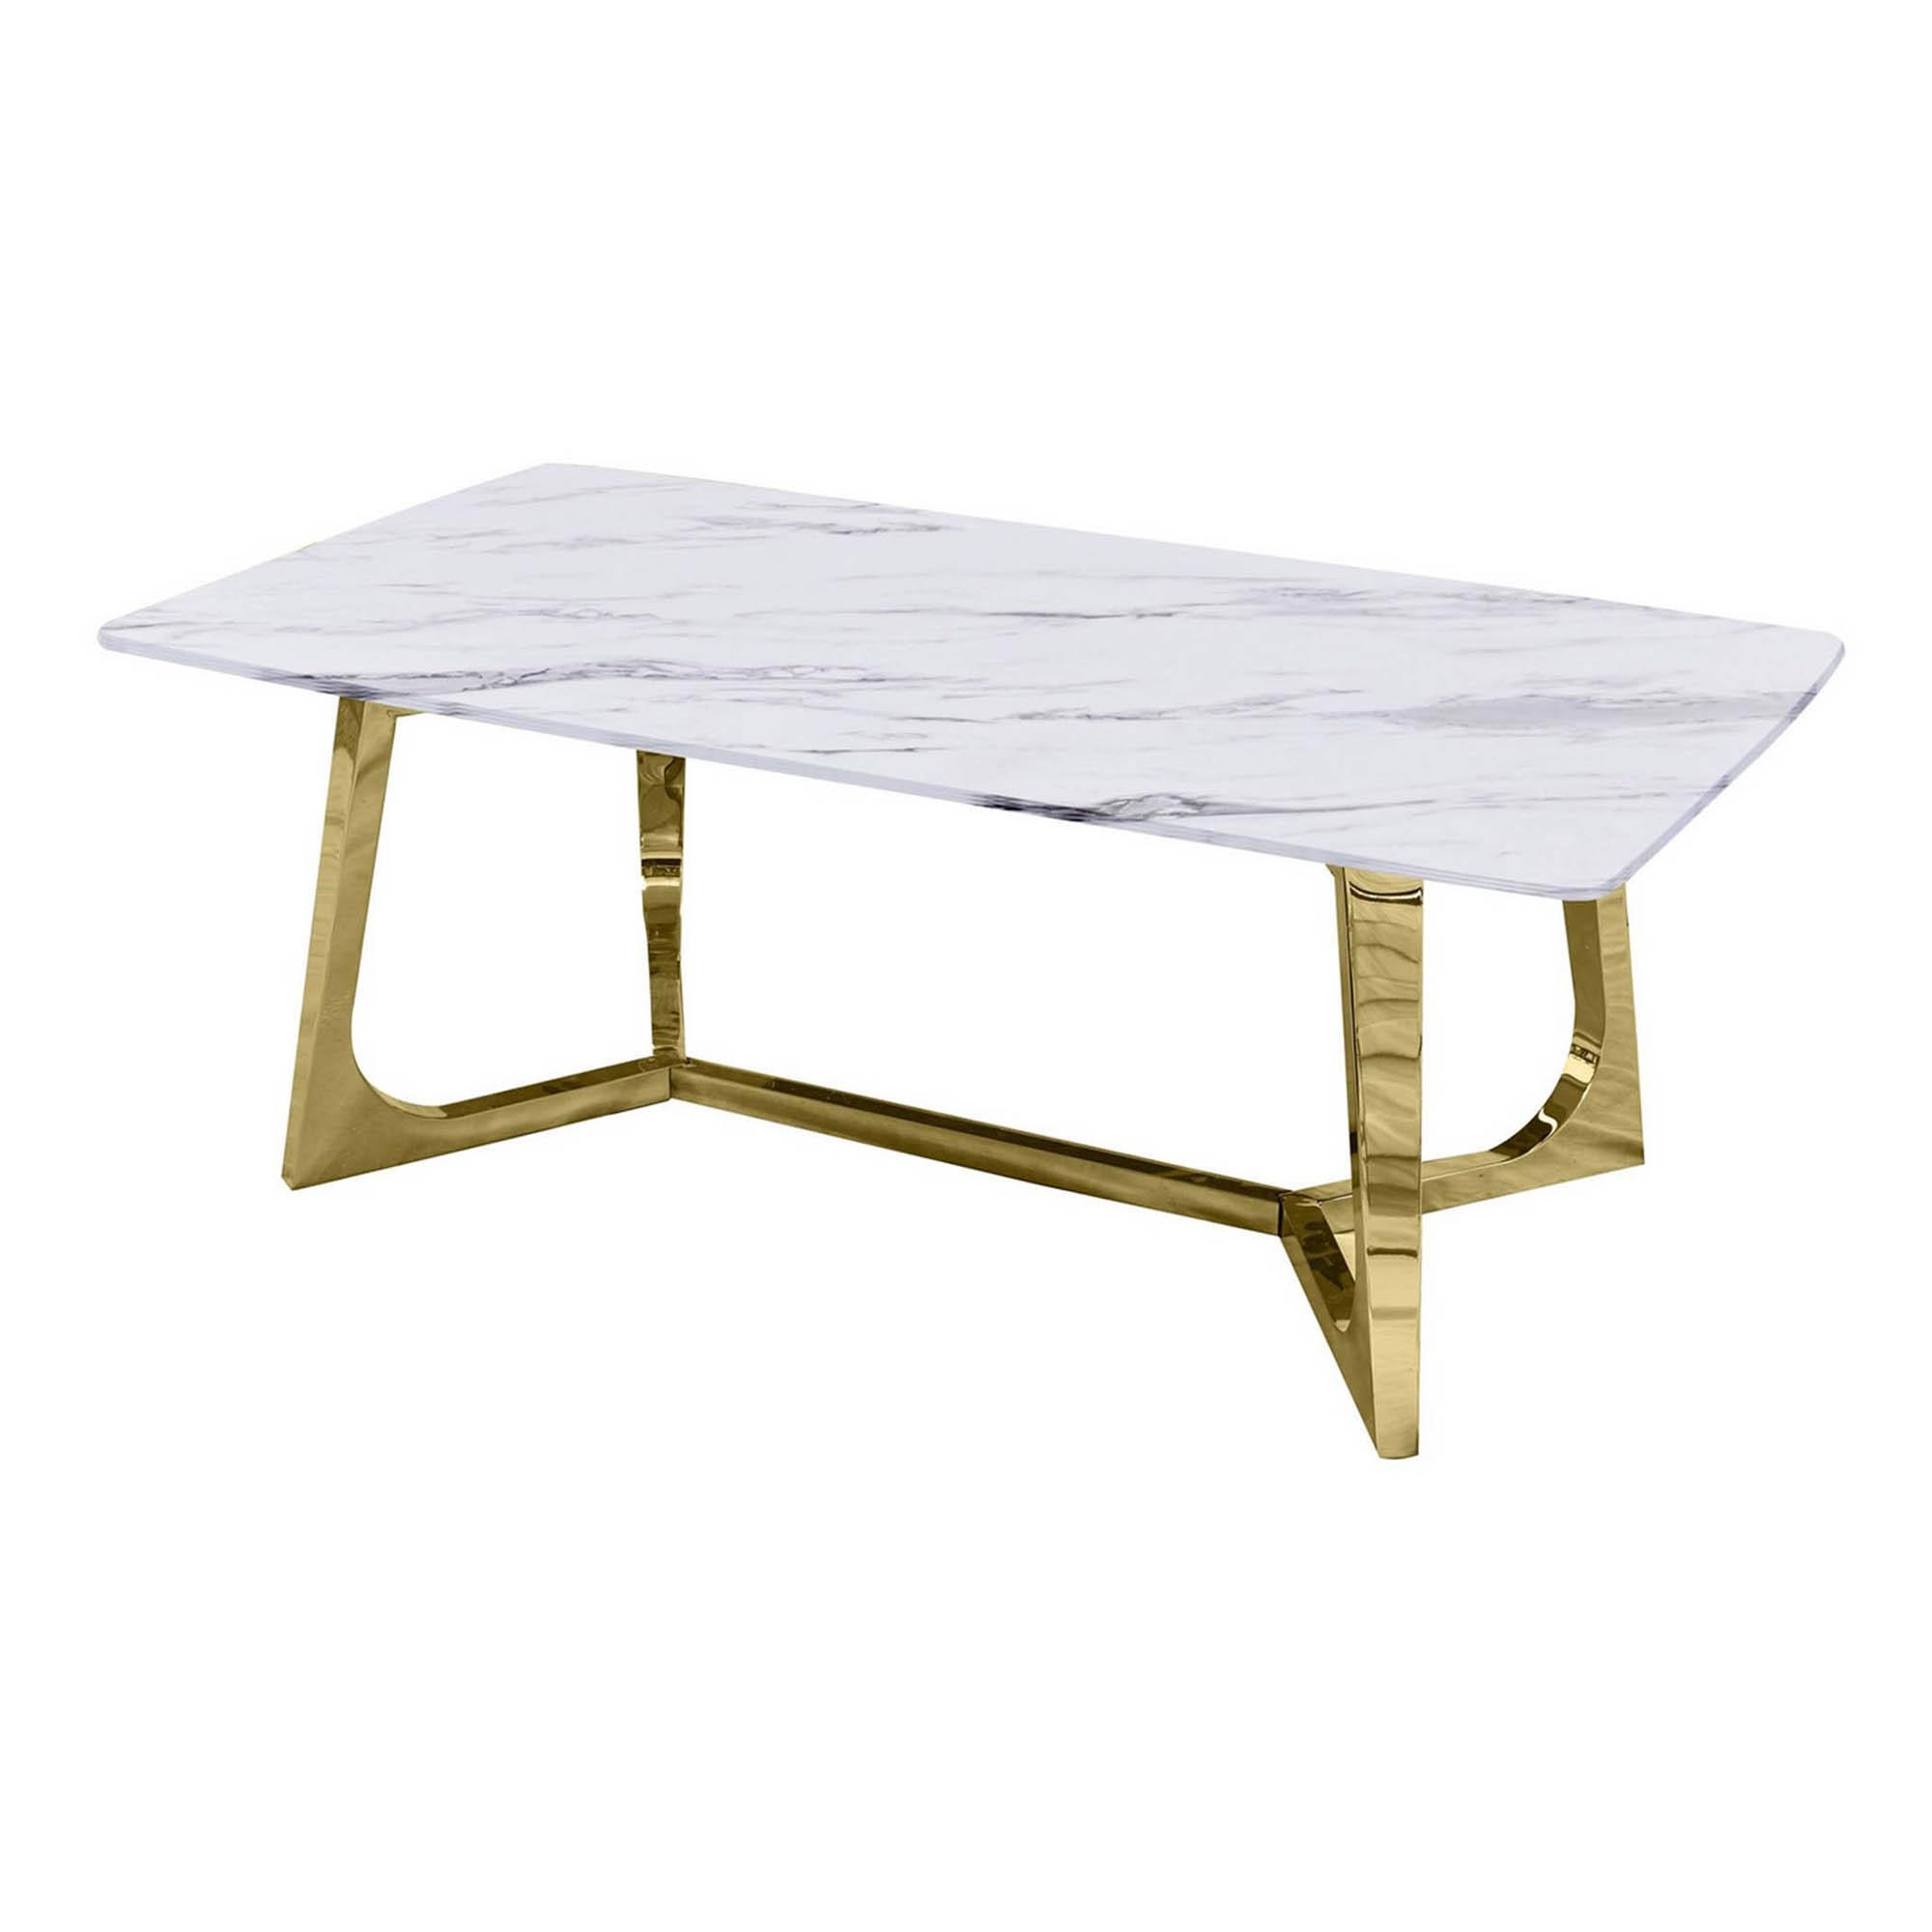 Table basse rectangulaire design effet marbre blanc et doré